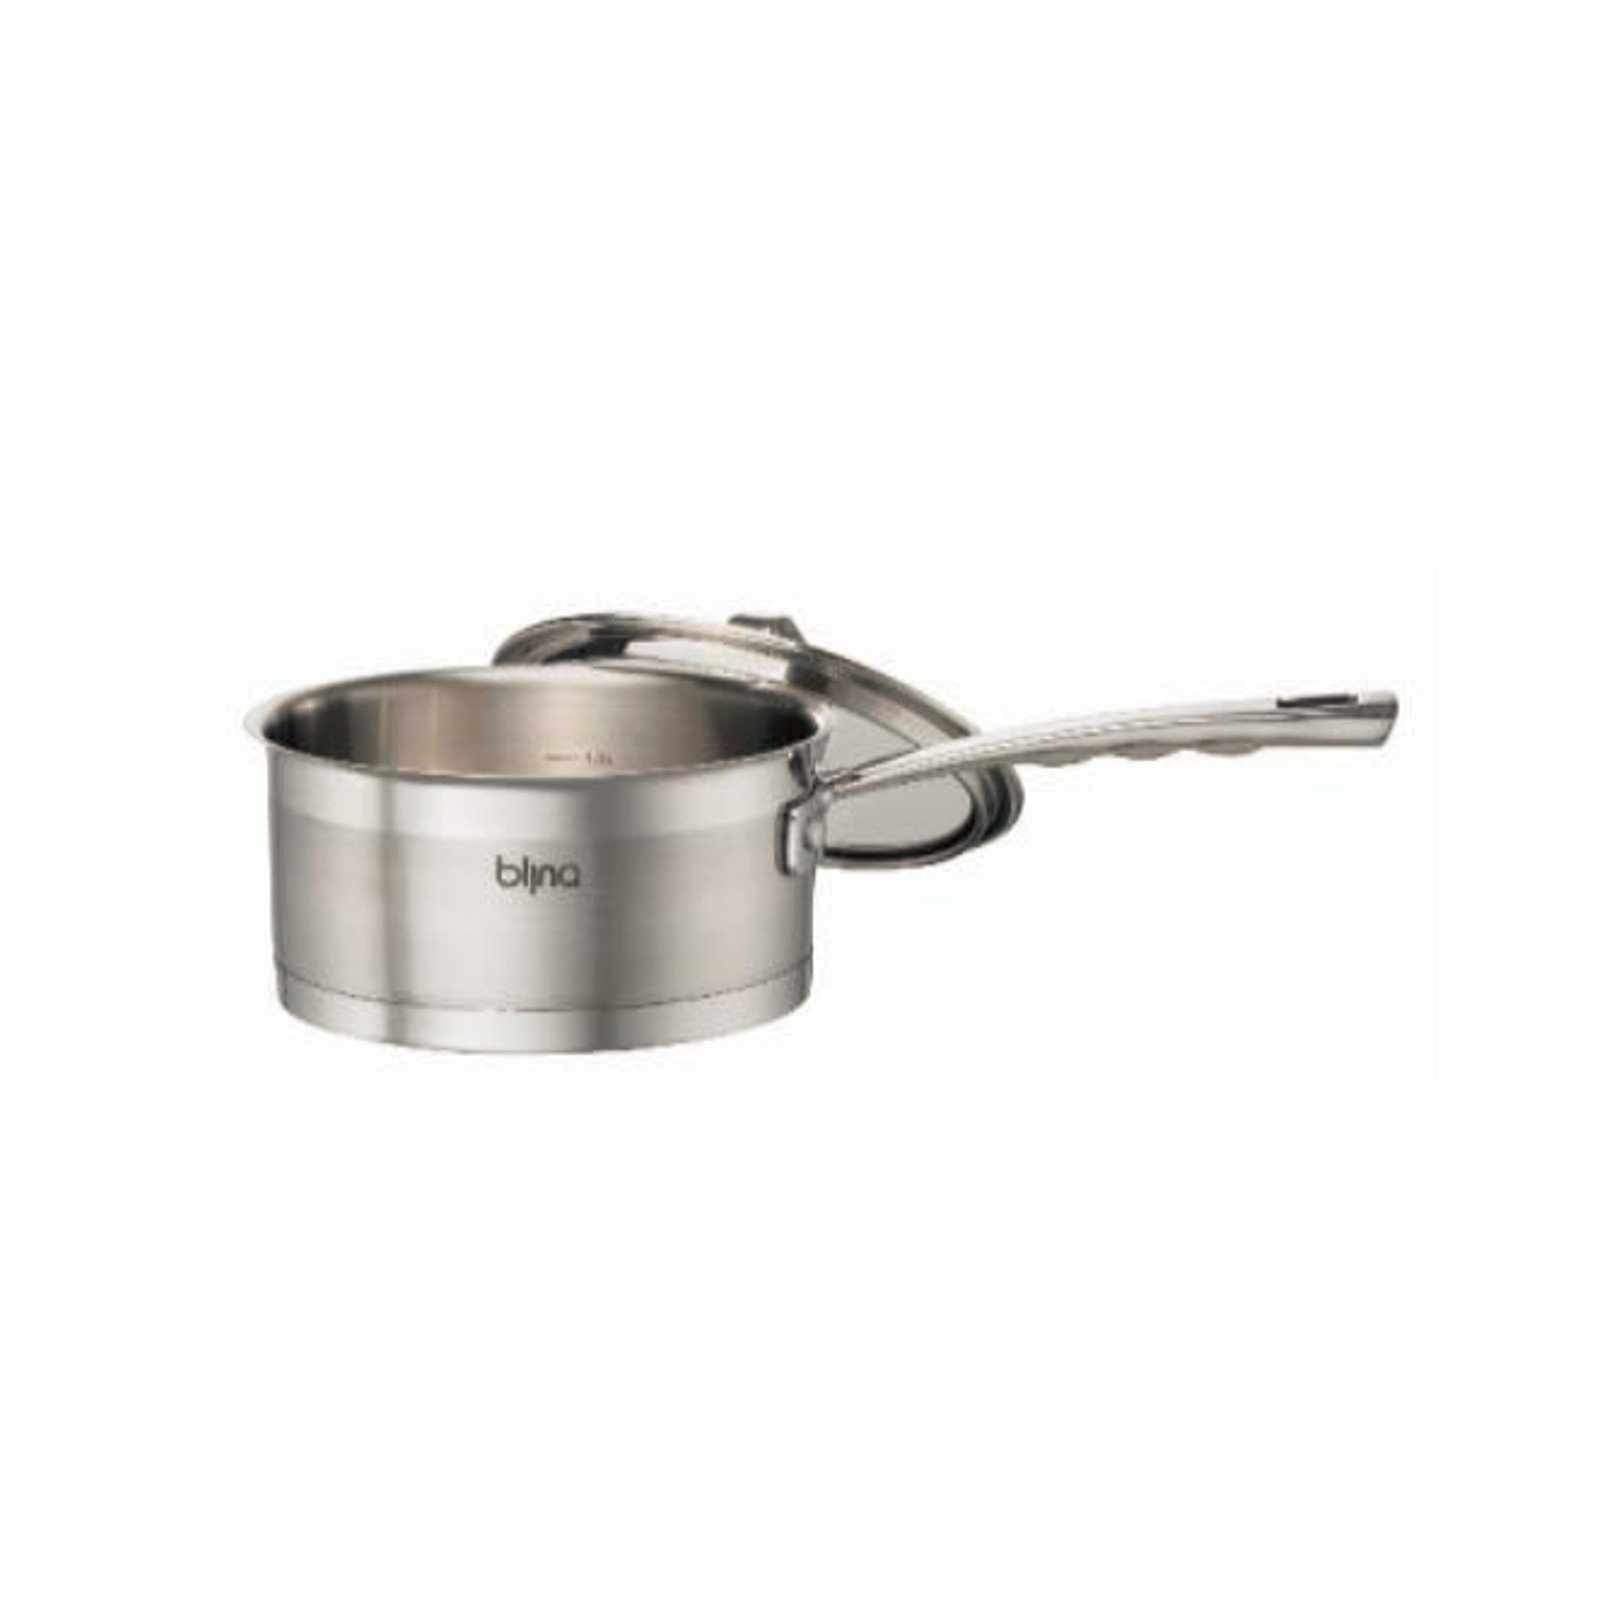 Blinq Gourmet 3pcs Induction Cookware Set - Stainless Steel-Stainless Steel Cookware Set-Chef's Quality Cookware